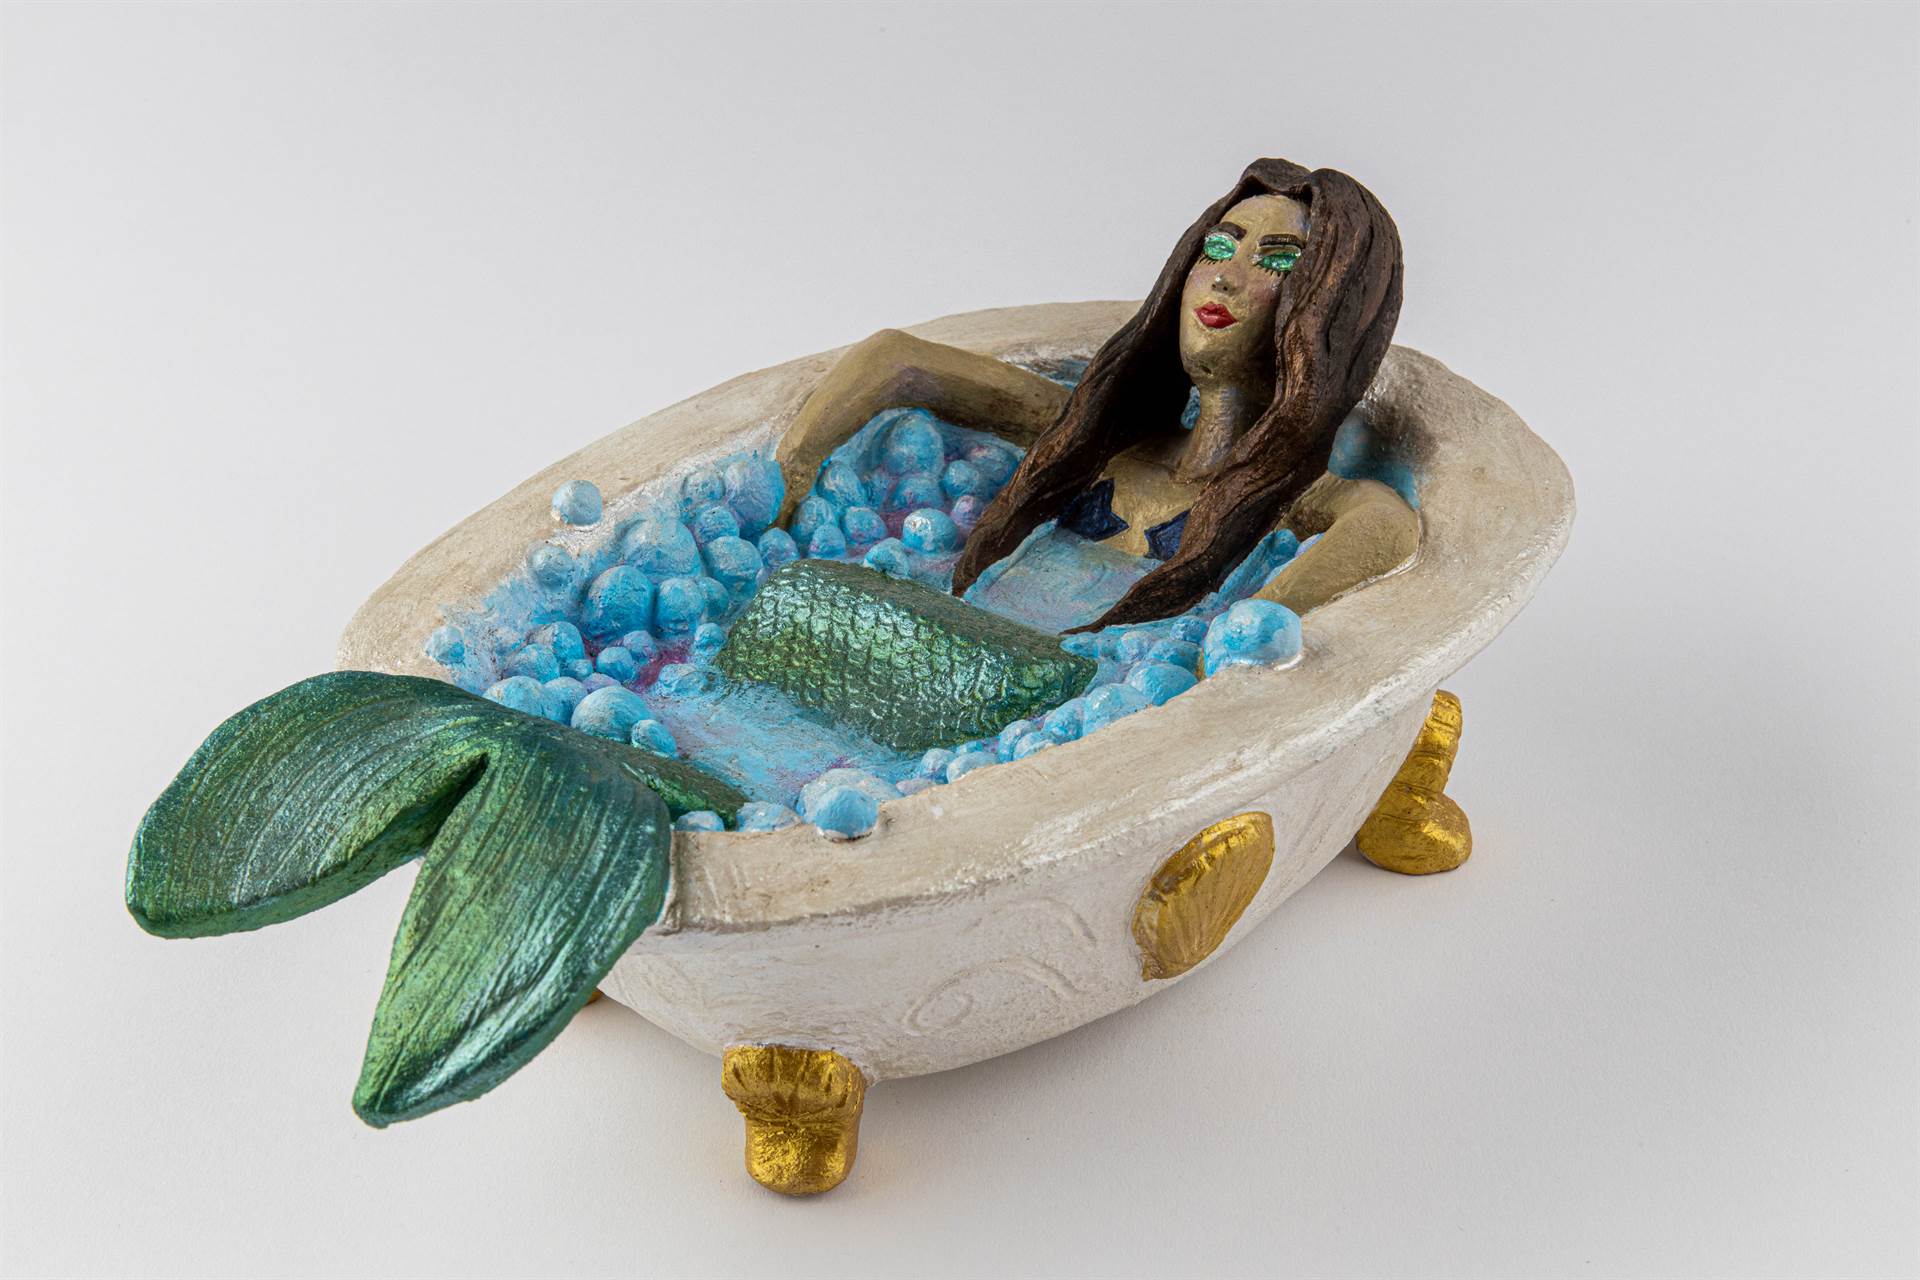 Ceramic Mermaid in a bath tub